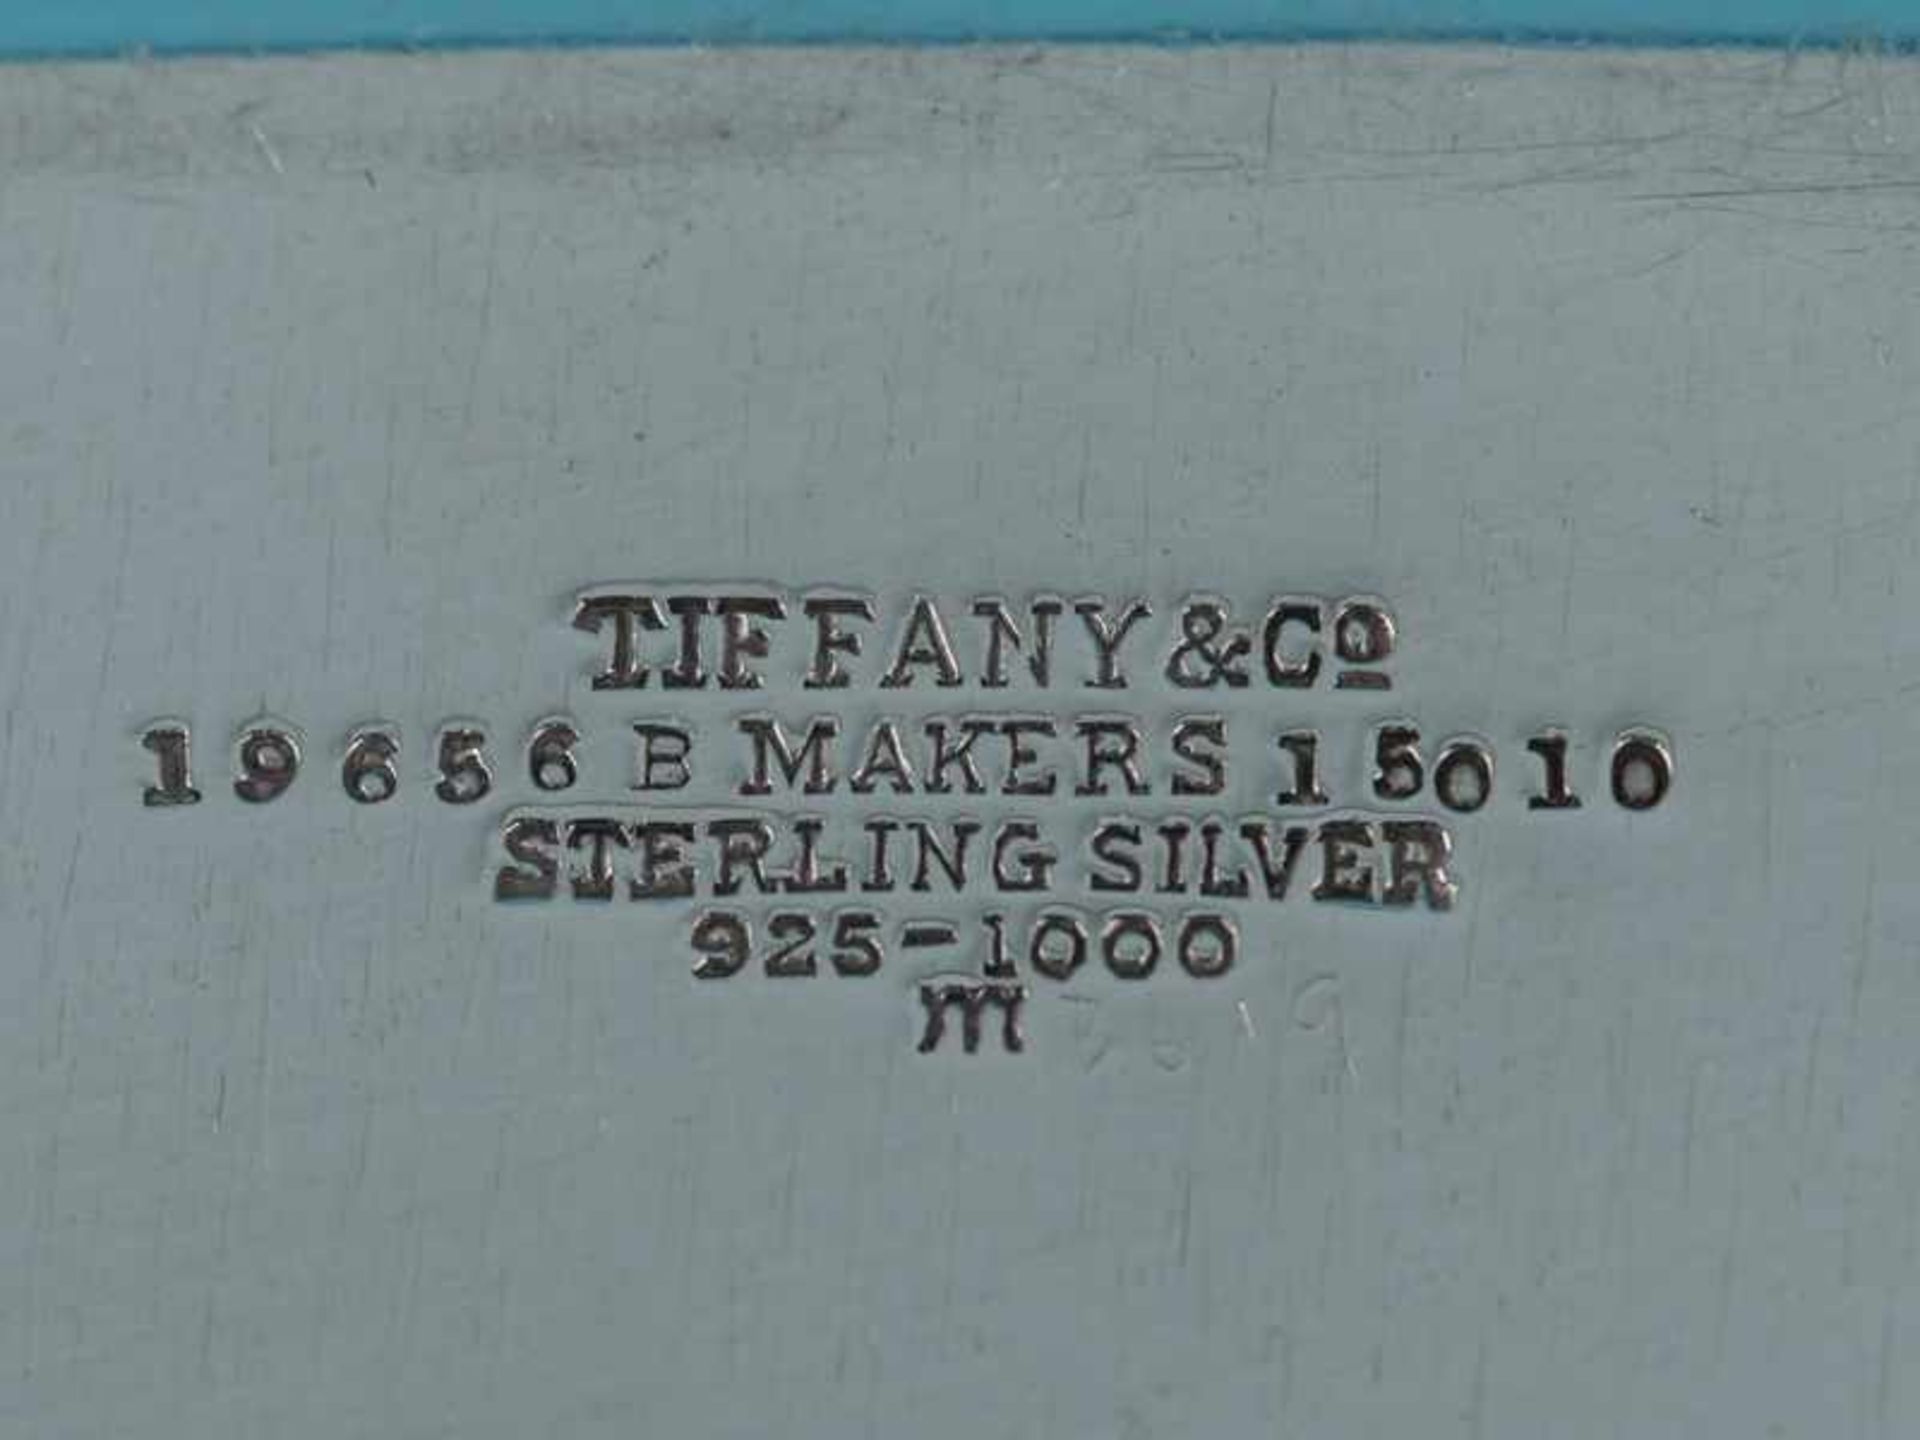 8-tlg. Rauch-Set für 6 Personen, Tiffany, New York (USA), 1916 - 1920. 925/-Silber, Gesamtgewicht - Image 8 of 16